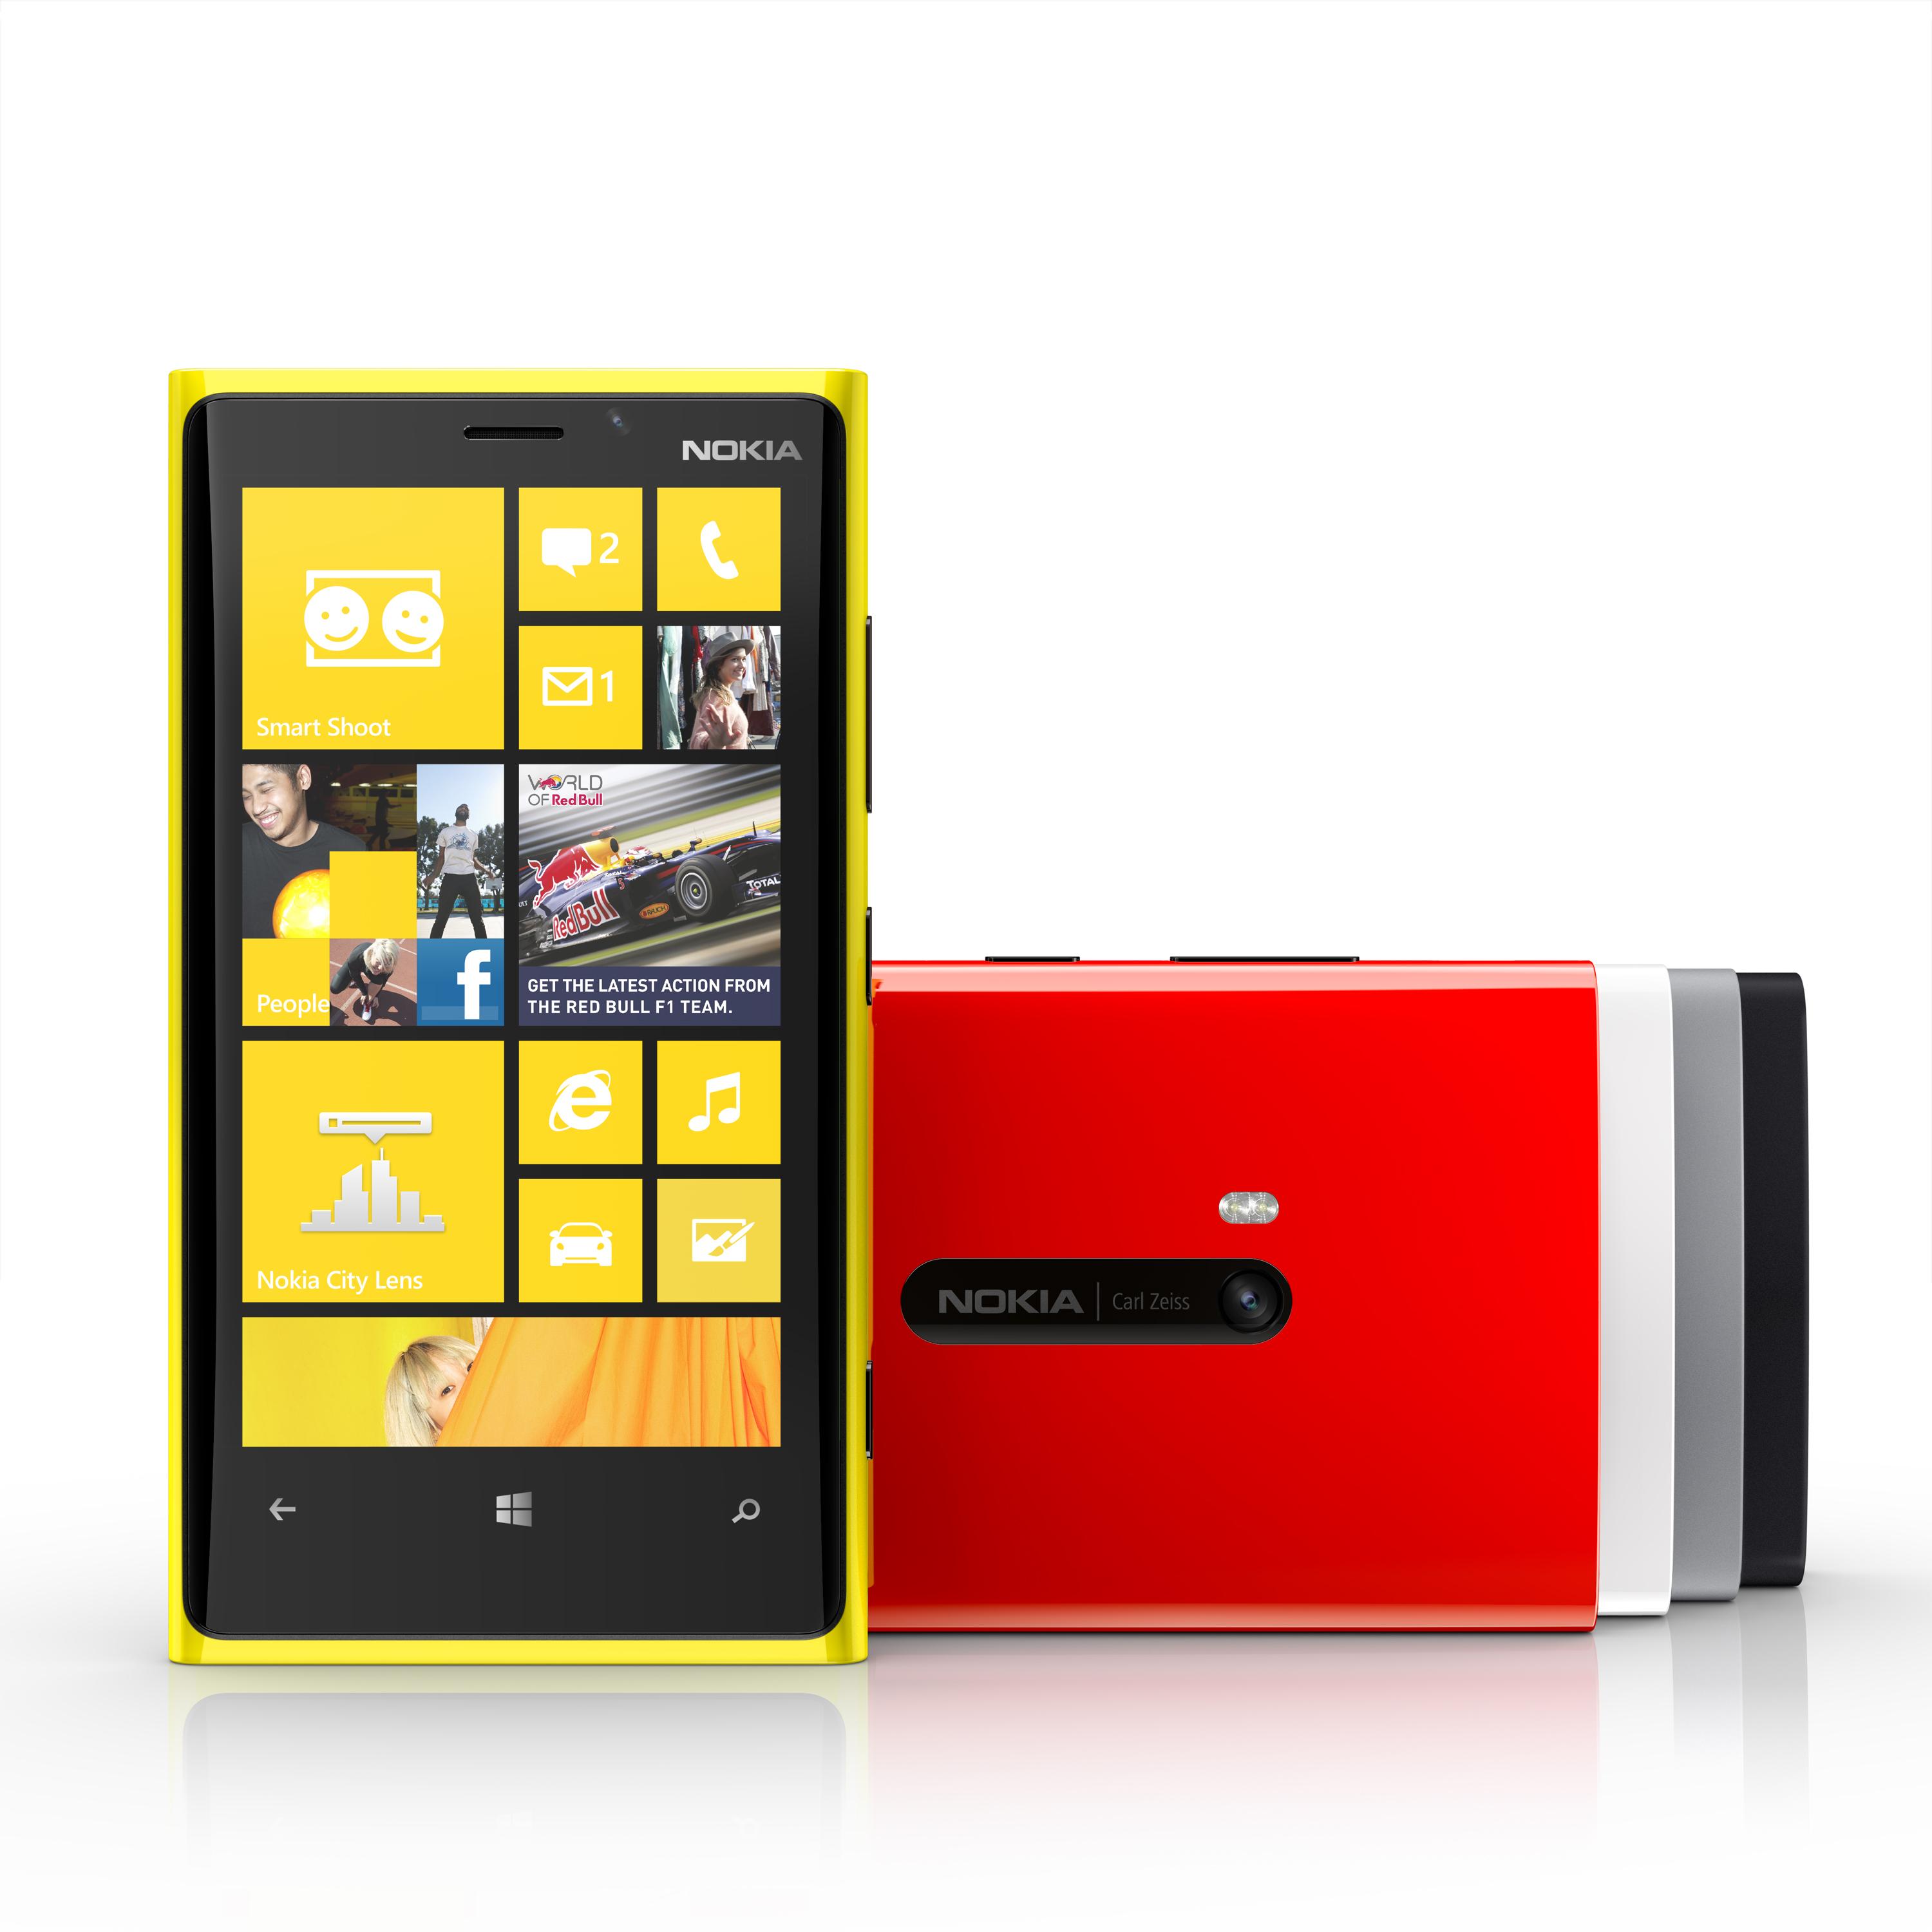 Nokia Lumia 920 er først med mye; mekanisk stabilisert kamera, skjerm du kan bruke hansker på og trådløs lading. Nå har den også et 4G-nett å koble seg til.